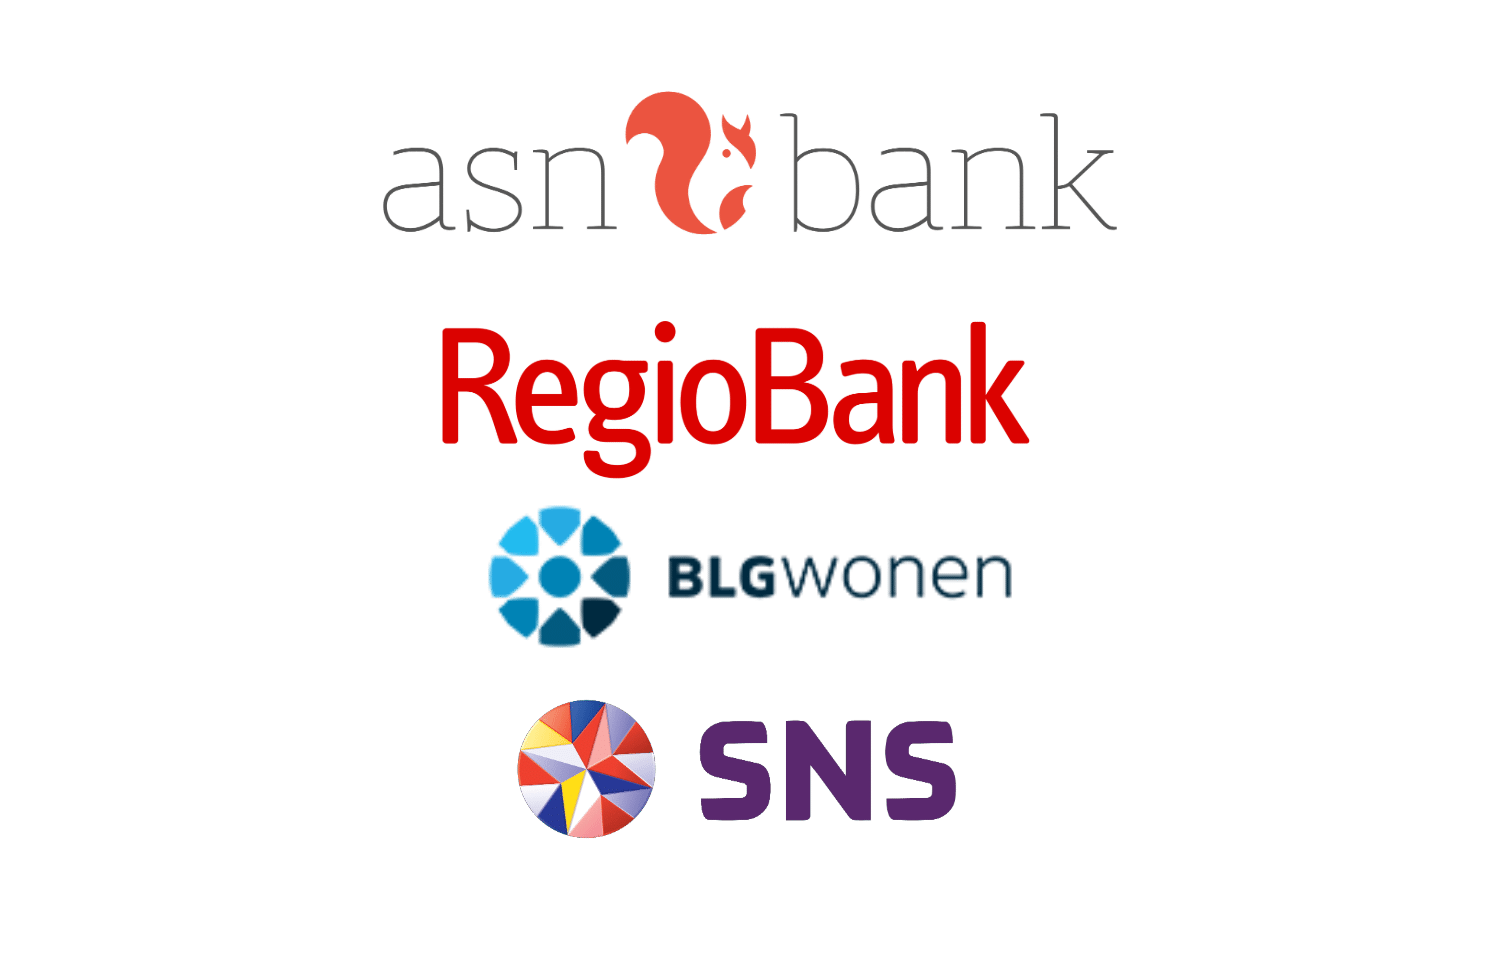 volksbank -asn bank - regiobank - blgwonen - sns - susteen - energieadvies -energiebespaarplan plus-acties